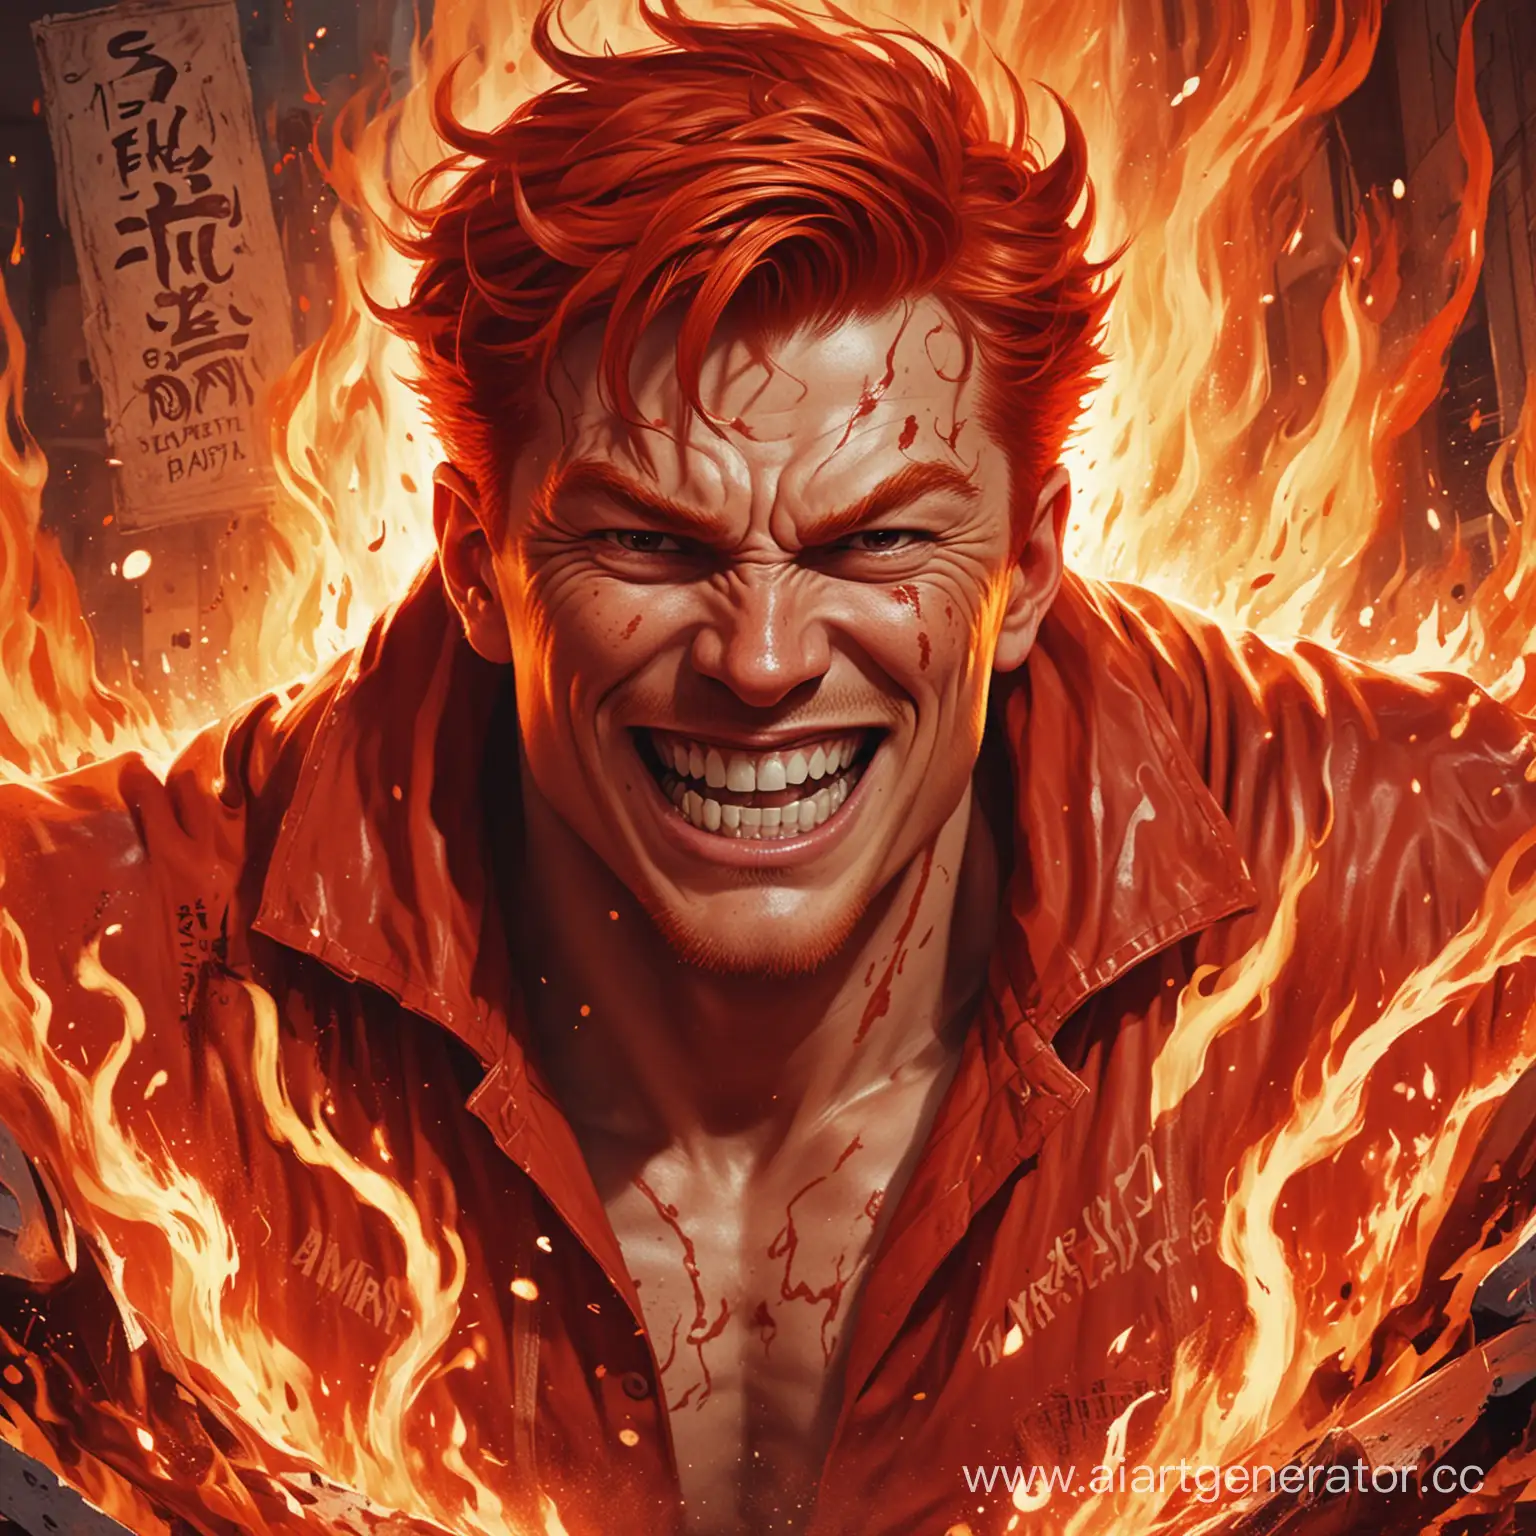 Экшн-сцена, мужчина в красных тонах с красными волосами в виде огня и улыбкой демона, вокруг которого непонятные надписи в стиле комикса